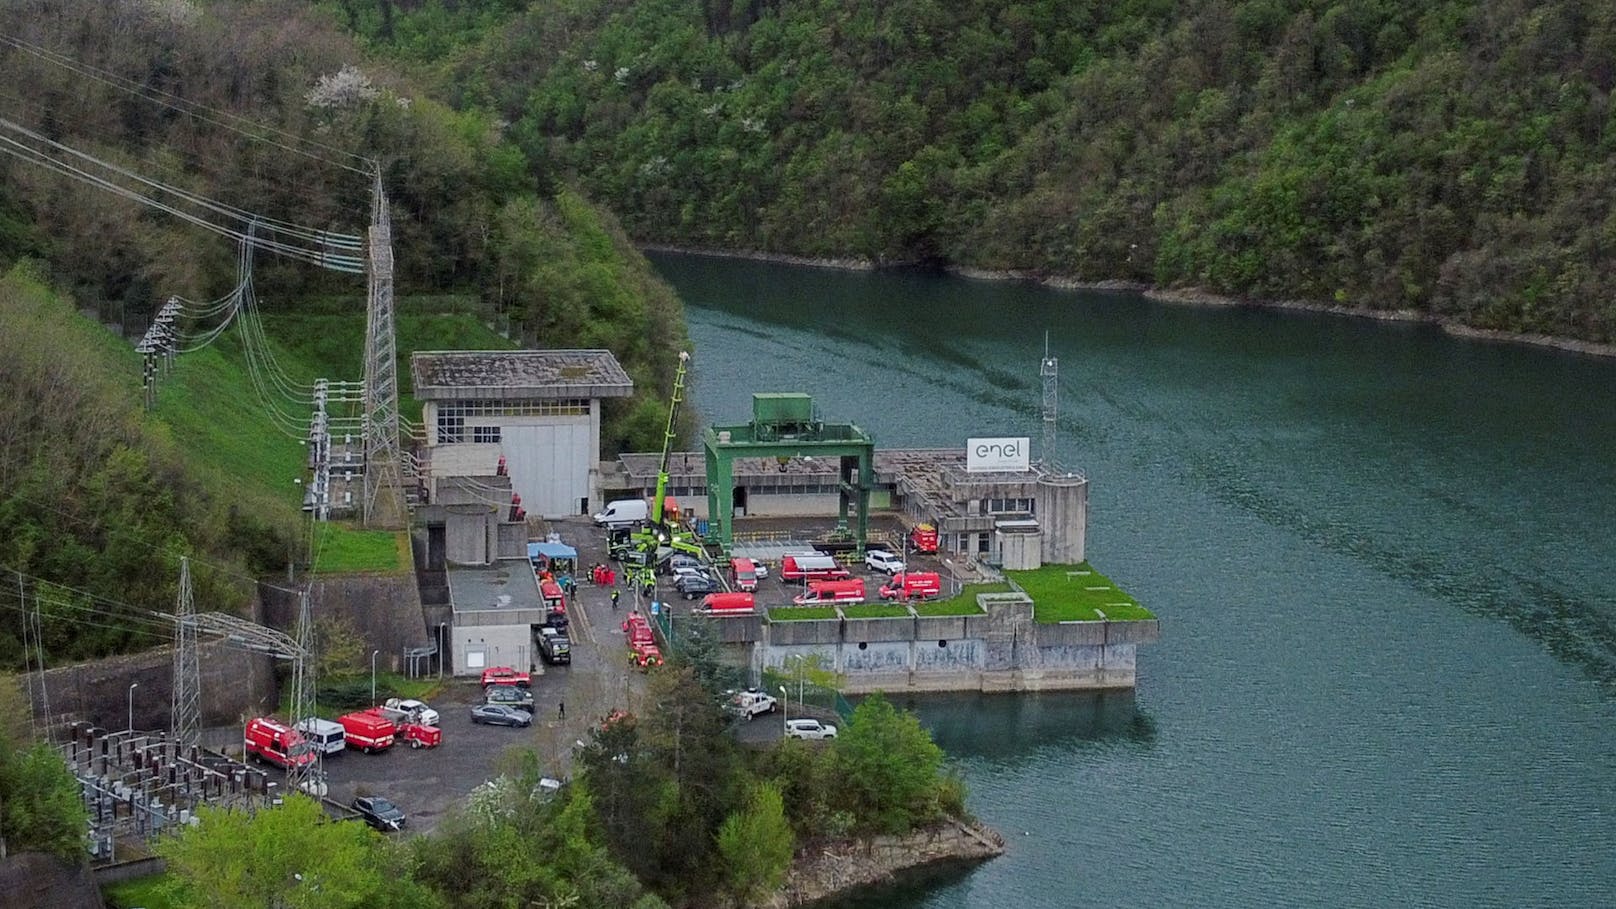 Bei einer Explosion in einem italienischen Wasserkraftwerk kamen mehrere Menschen ums Leben.